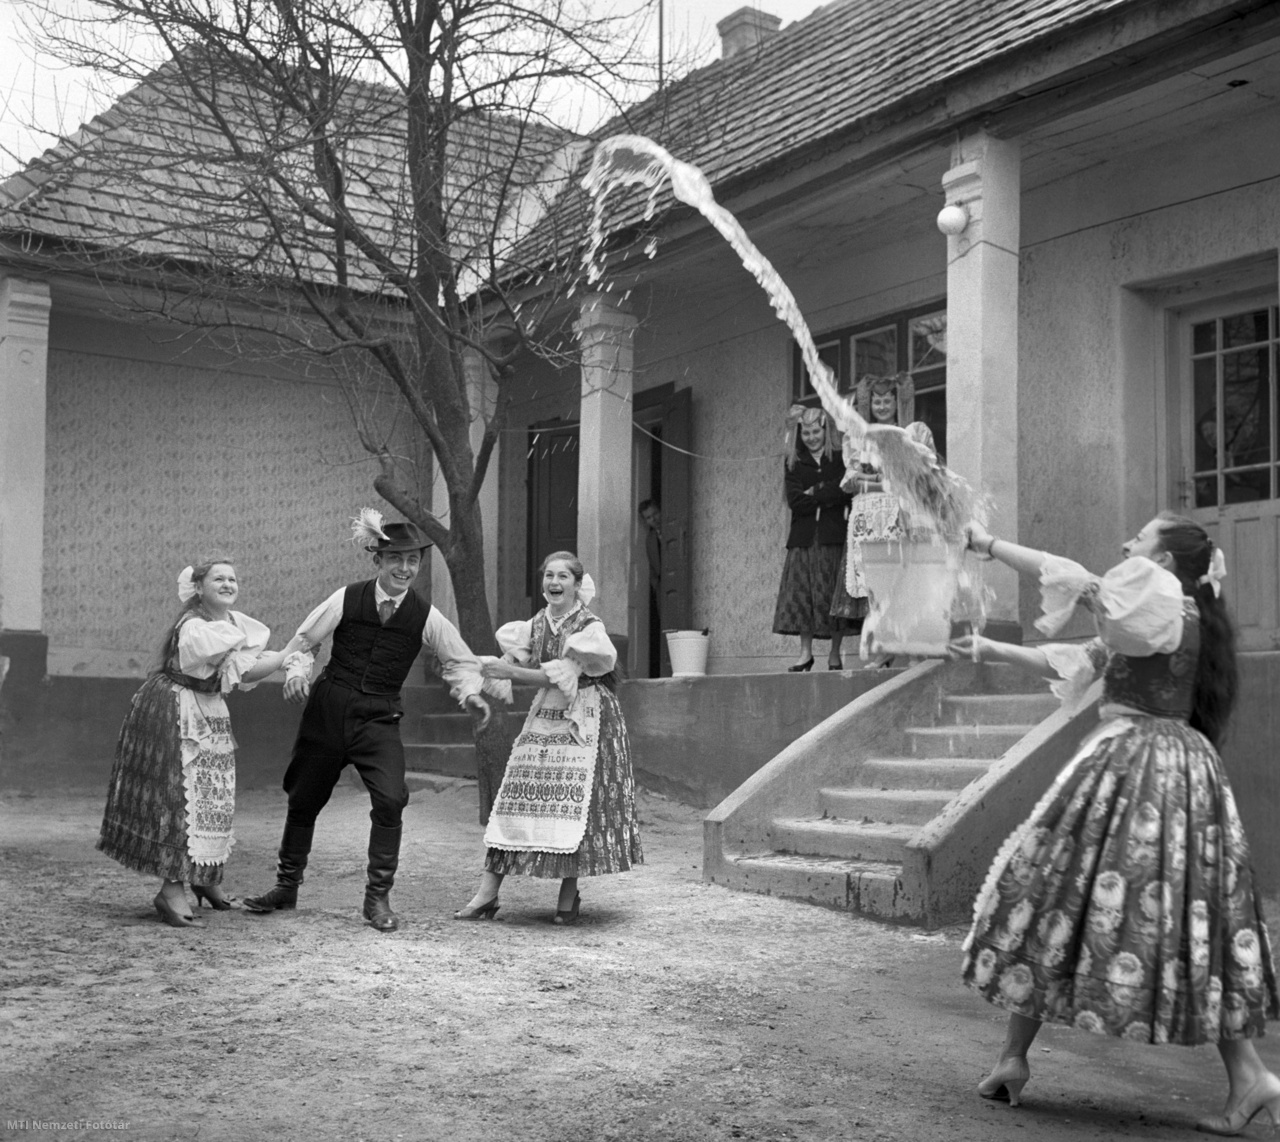 Őrhalom, 1961. március 31. Egy legényt fog le két lány húsvét keddjén Őrhalmon, miközben társuk a település hagyományait követve meglocsolja egy vödör kútvízzel.